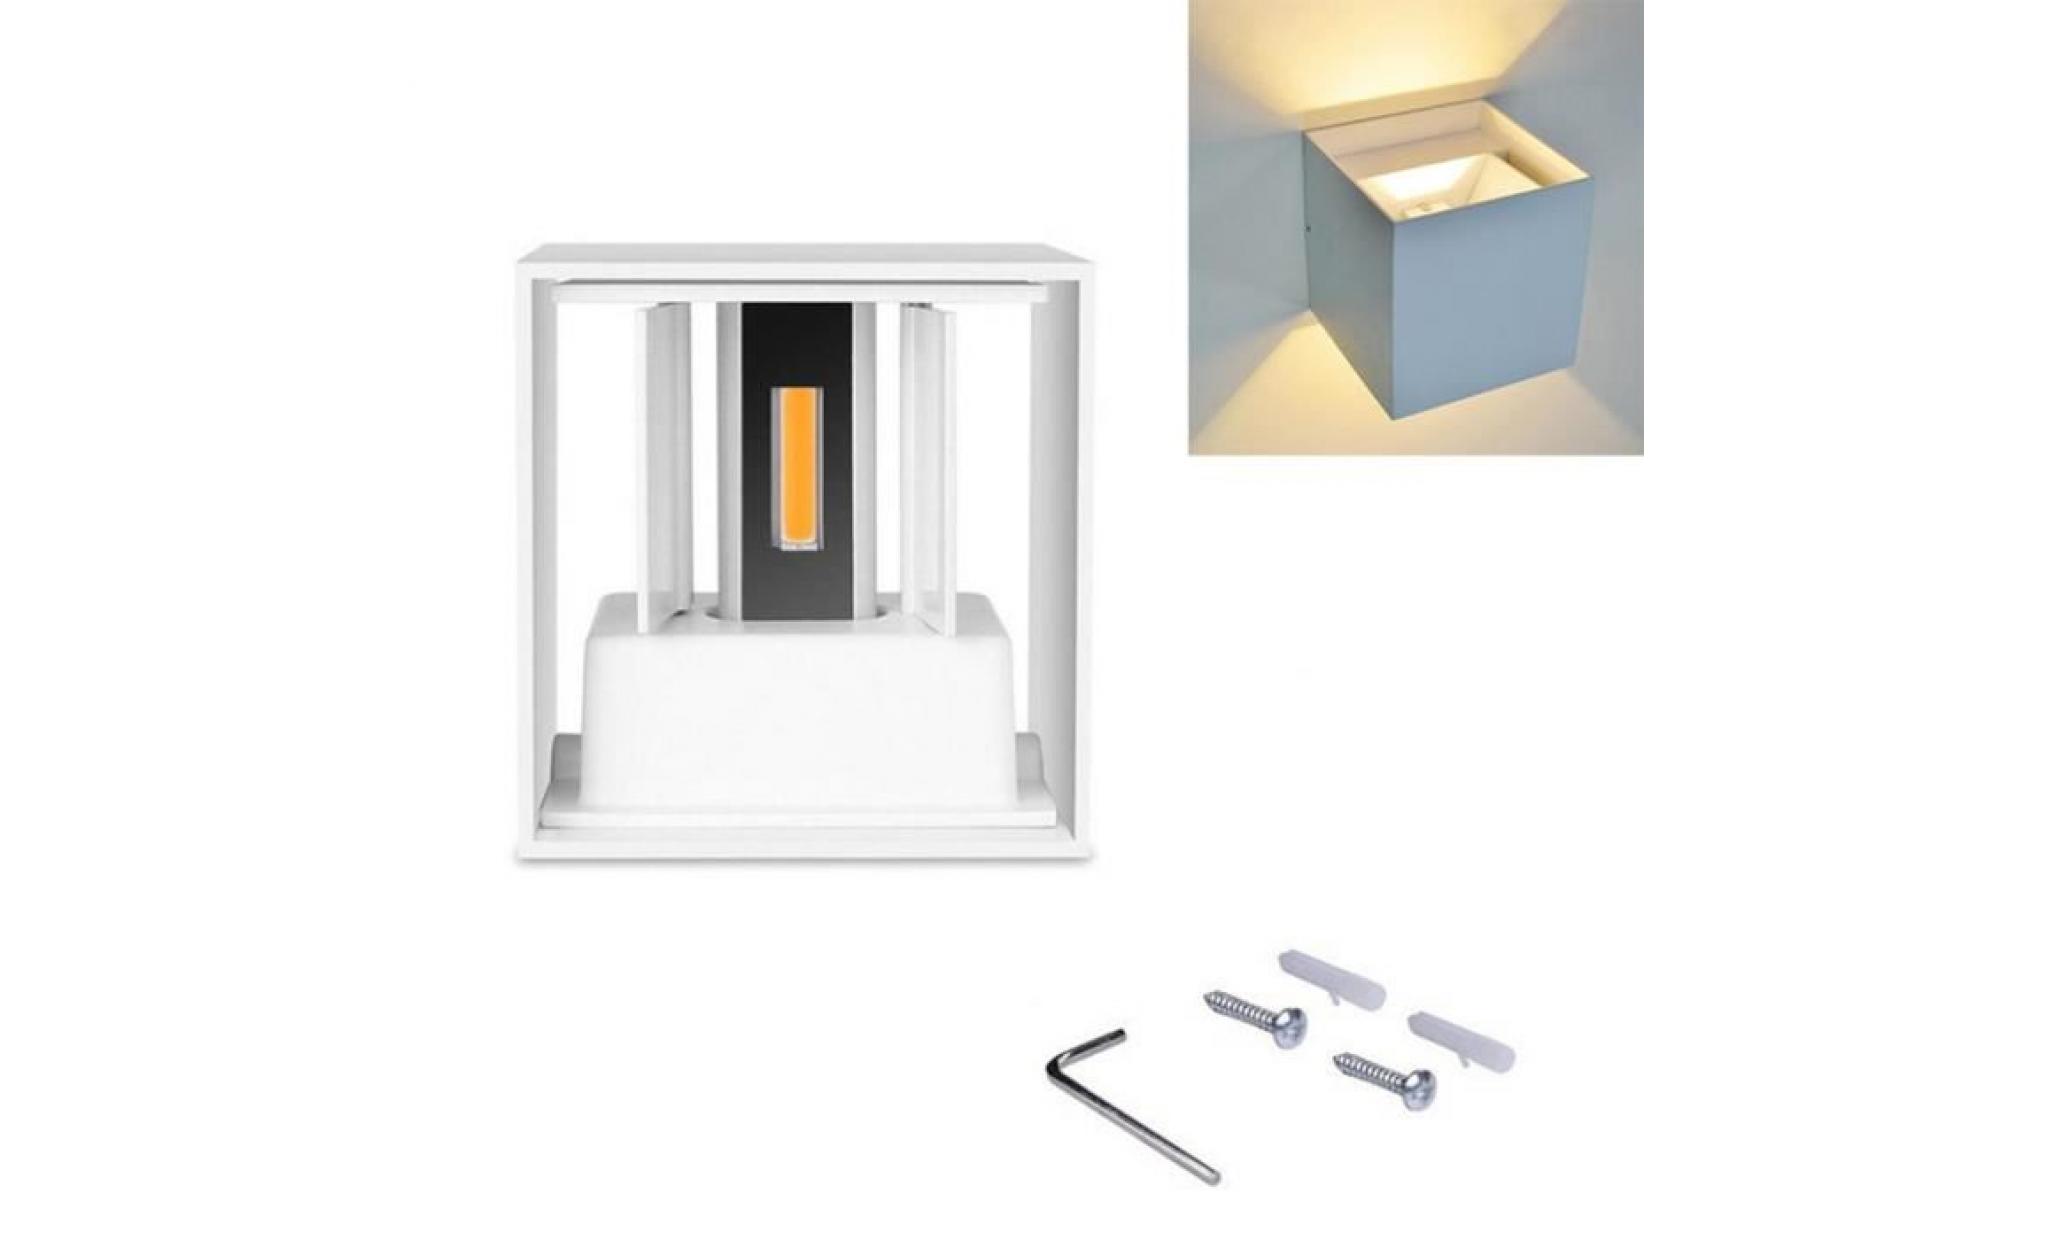 Étanche cube aluminium 7w led applique moderne lumière home garden décoration blanc cas warm white light *